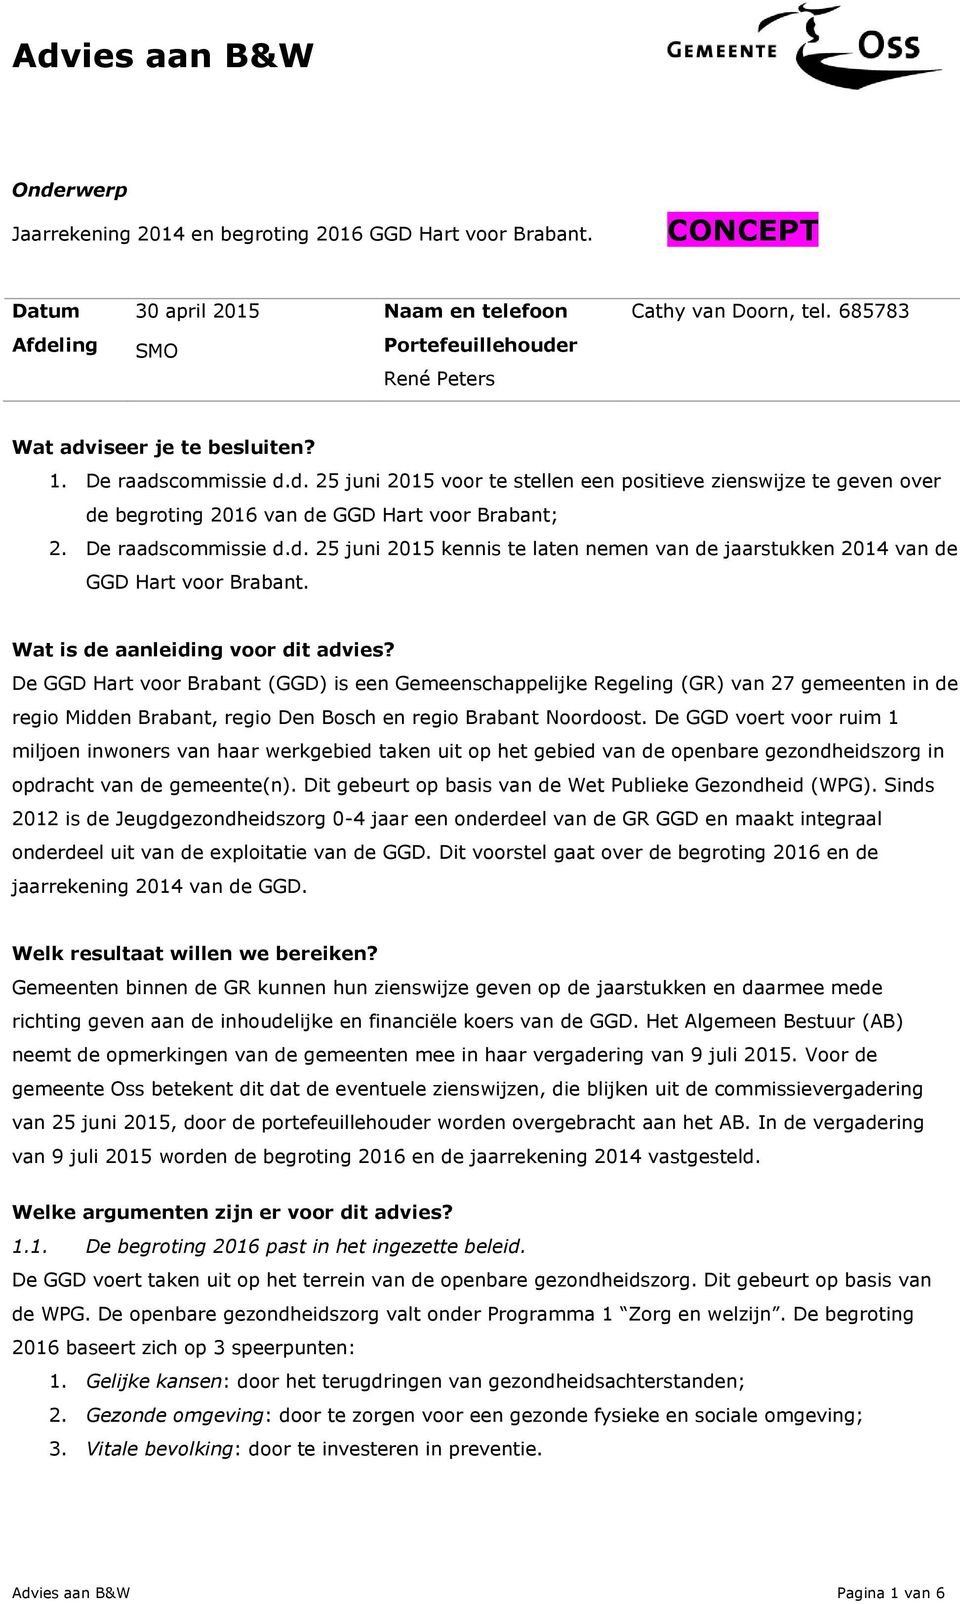 De raadscommissie d.d. 25 juni 2015 kennis te laten nemen van de jaarstukken 2014 van de GGD Hart voor Brabant. Wat is de aanleiding voor dit advies?